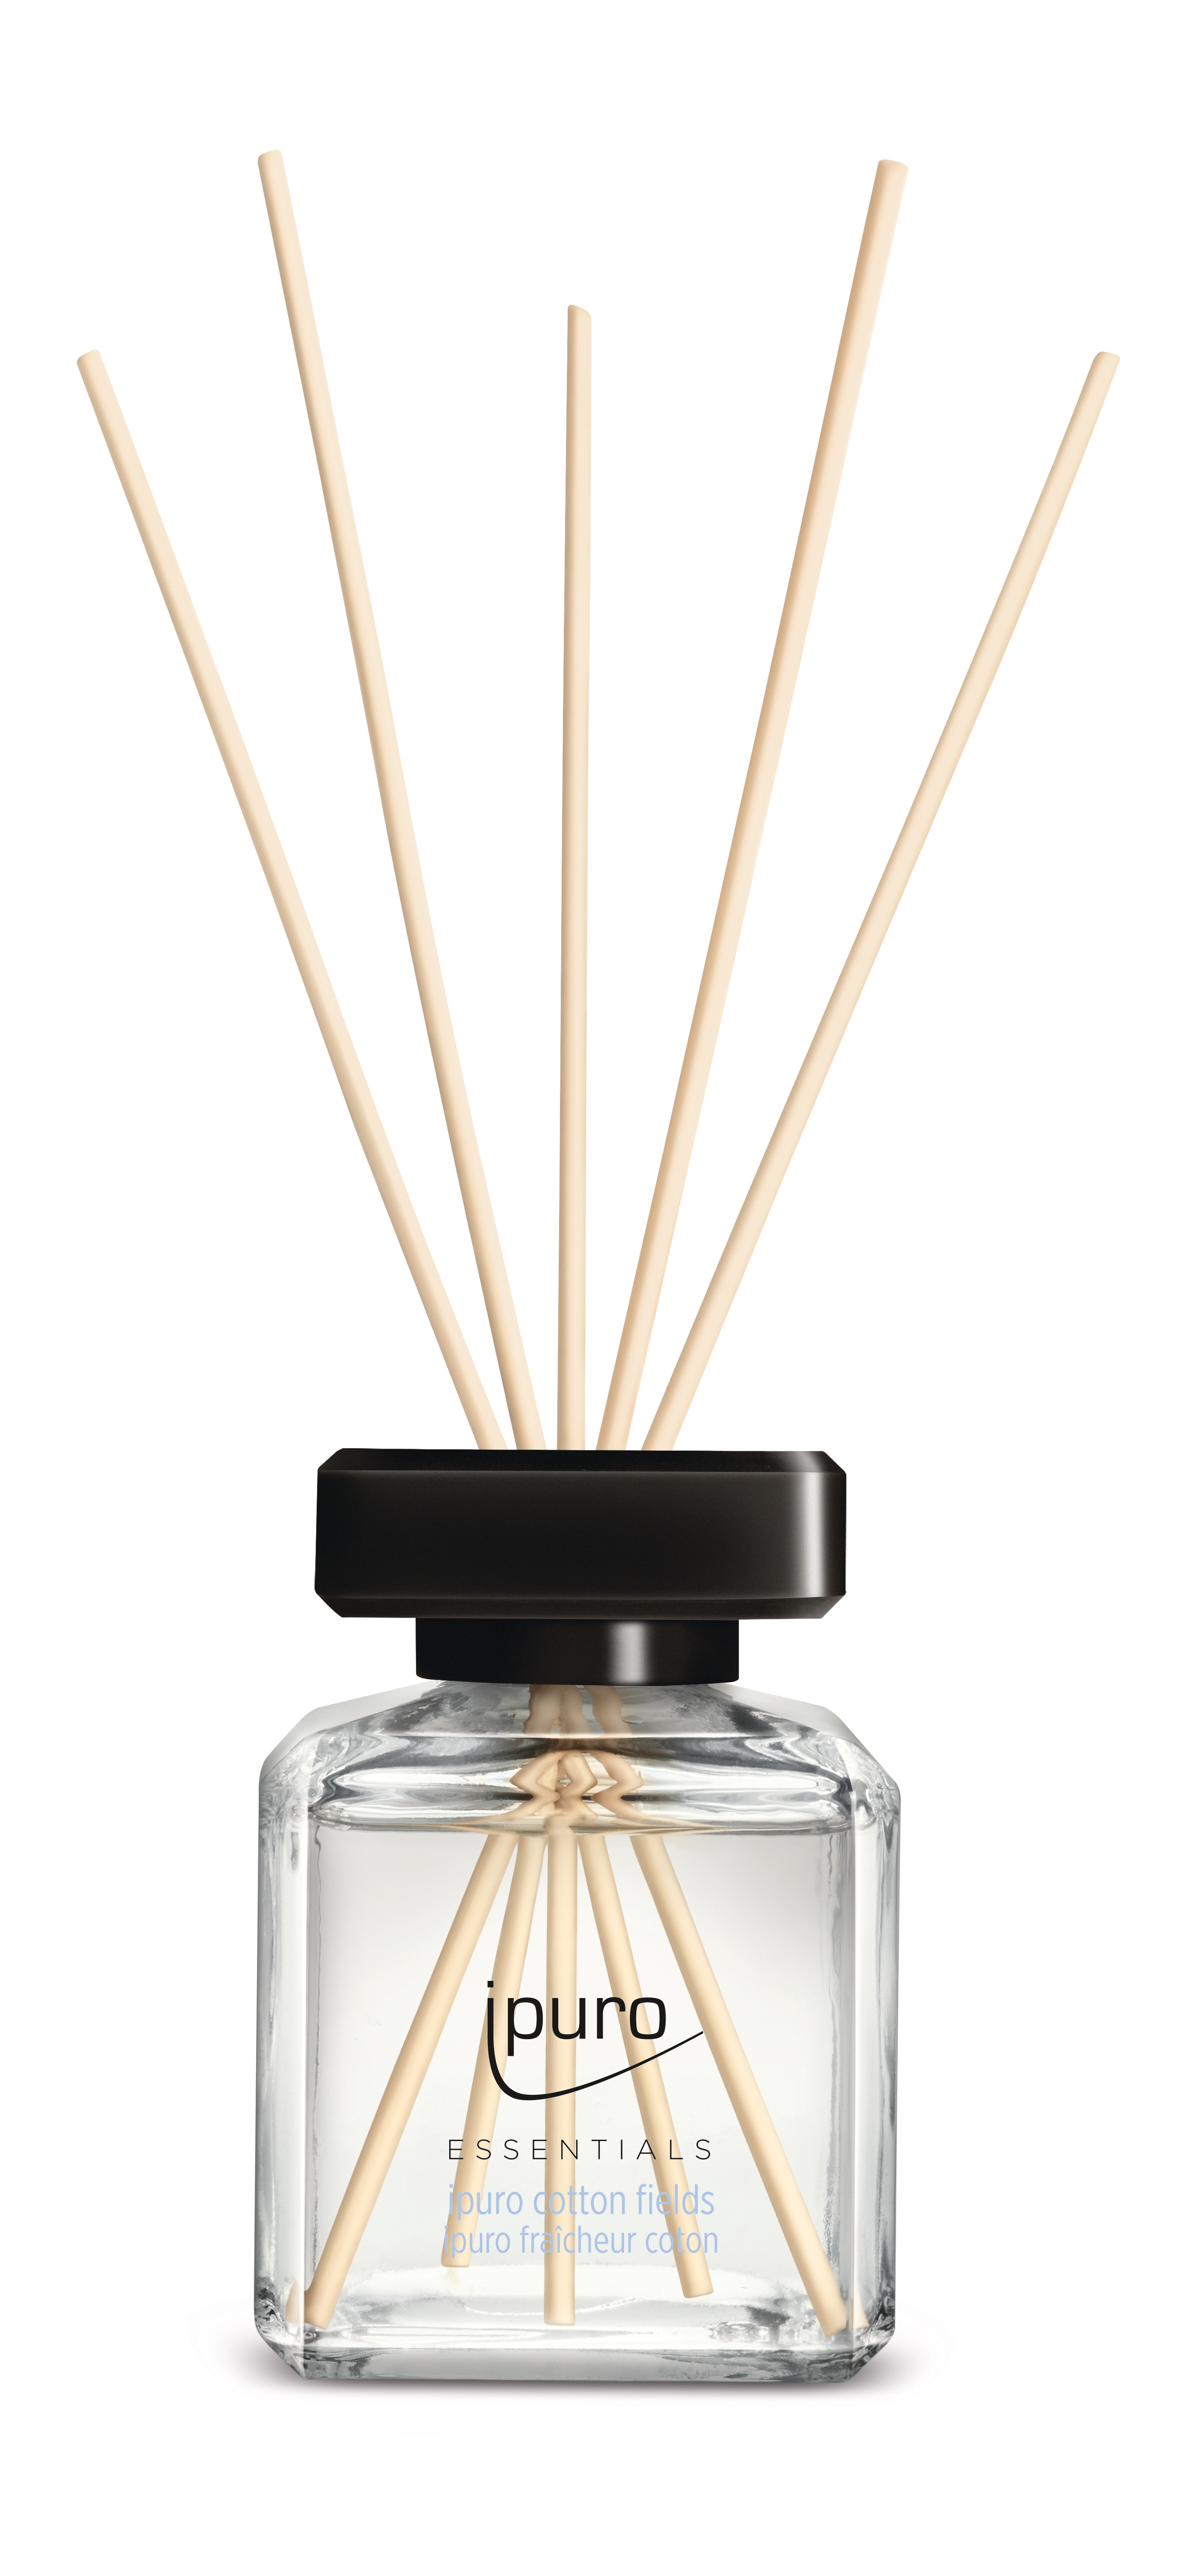 IPURO Parfum d'ambiance Essentials 050.5060.20 cotton fields 200ml